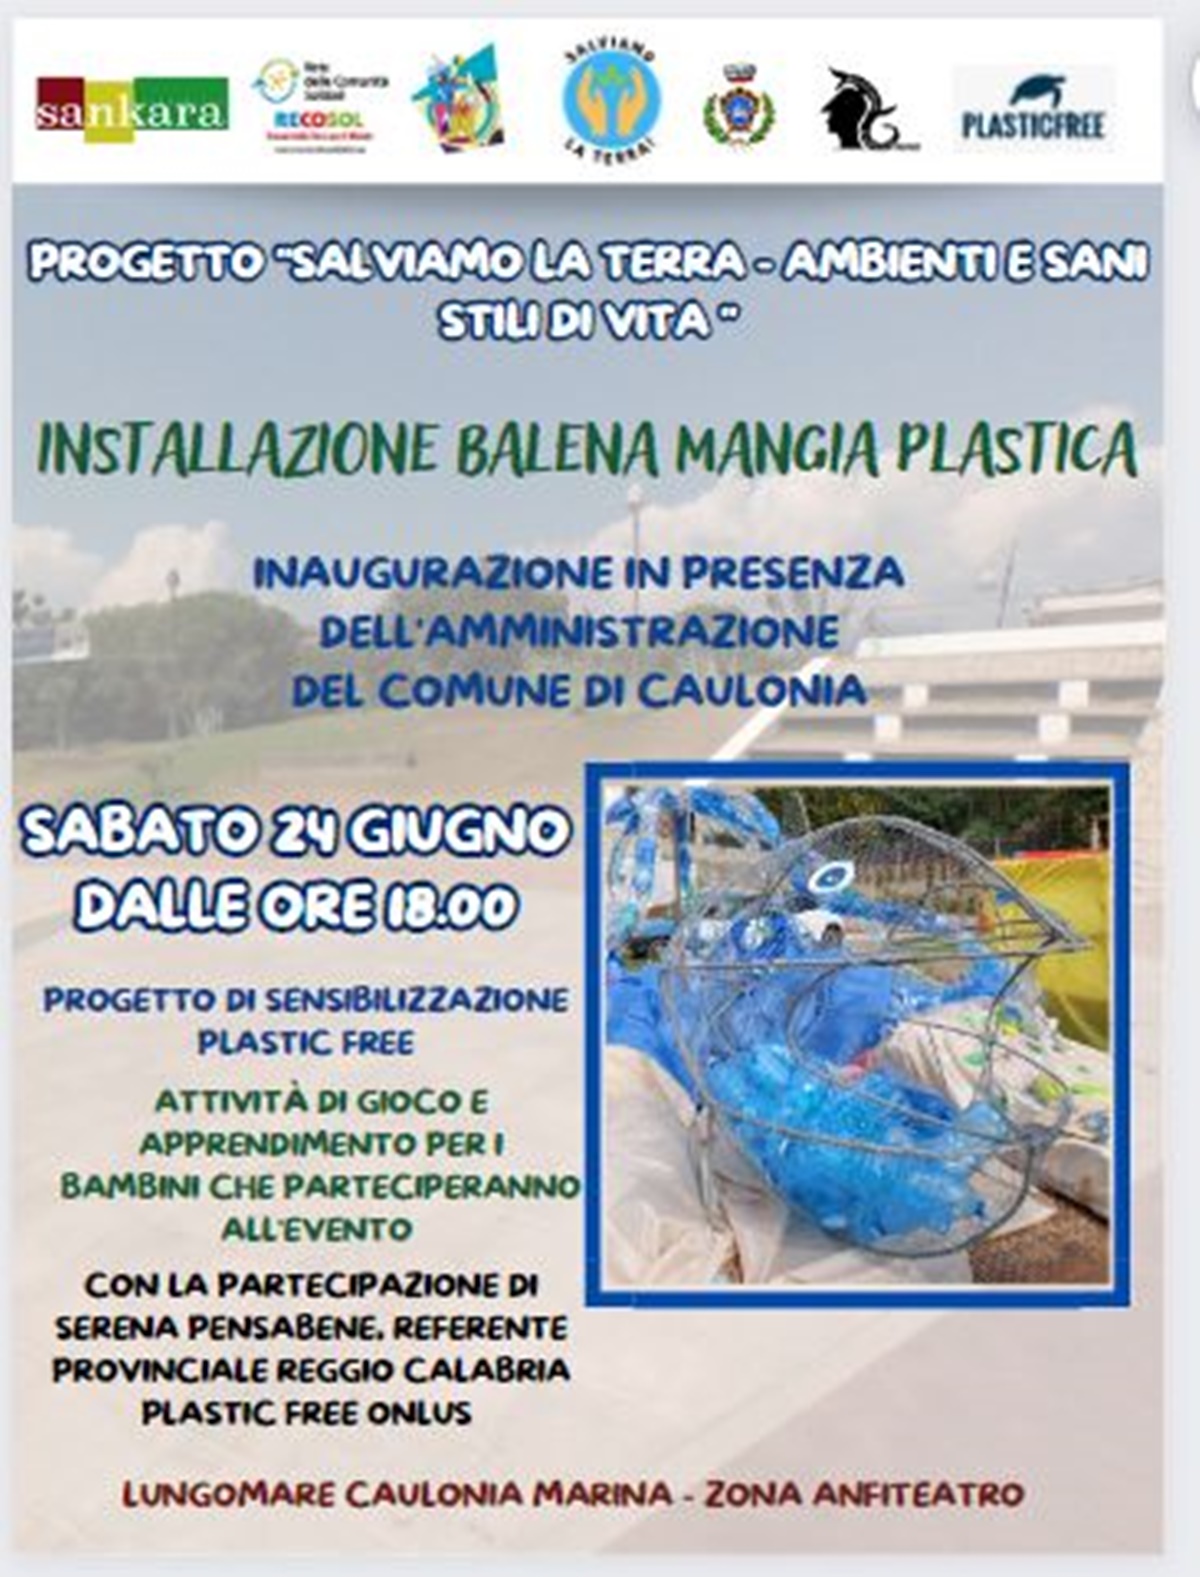 Sensibilizzazione ambientale, a Caulonia la “Balena mangia plastica” realizzata dai bambini donata al Comune